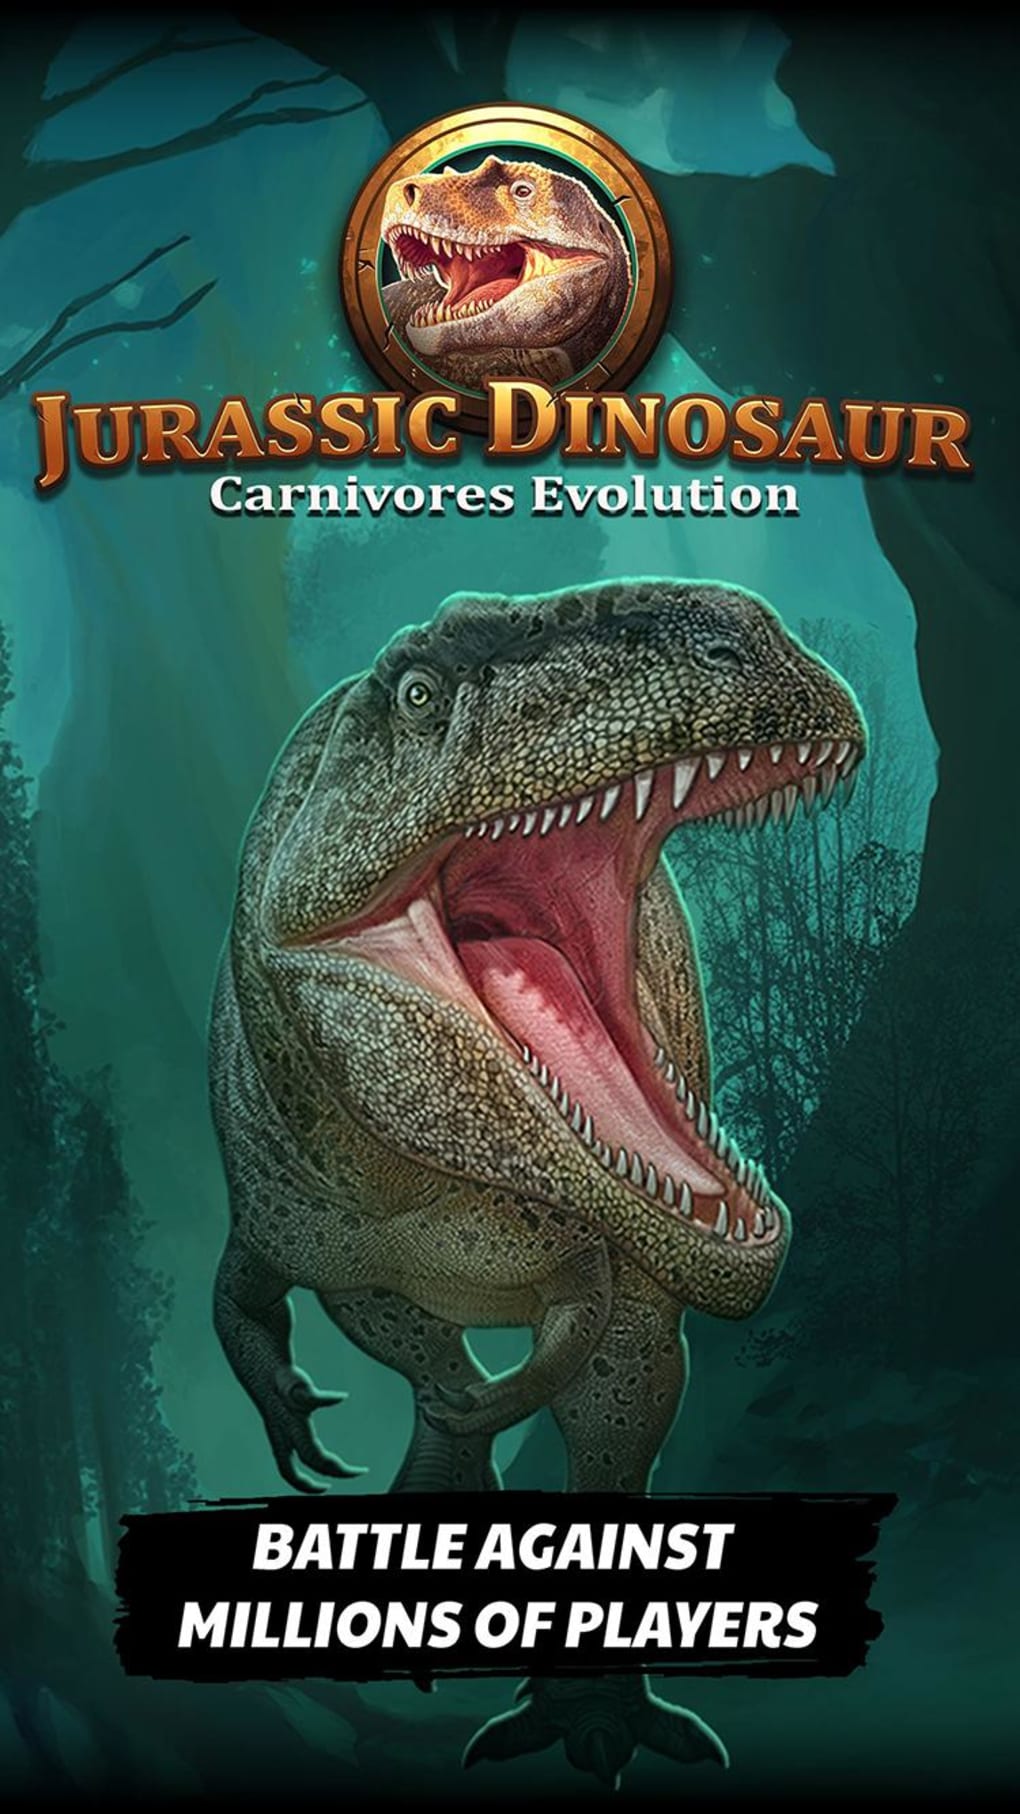 Carnivores: Dinosaur Hunter - Apps on Google Play